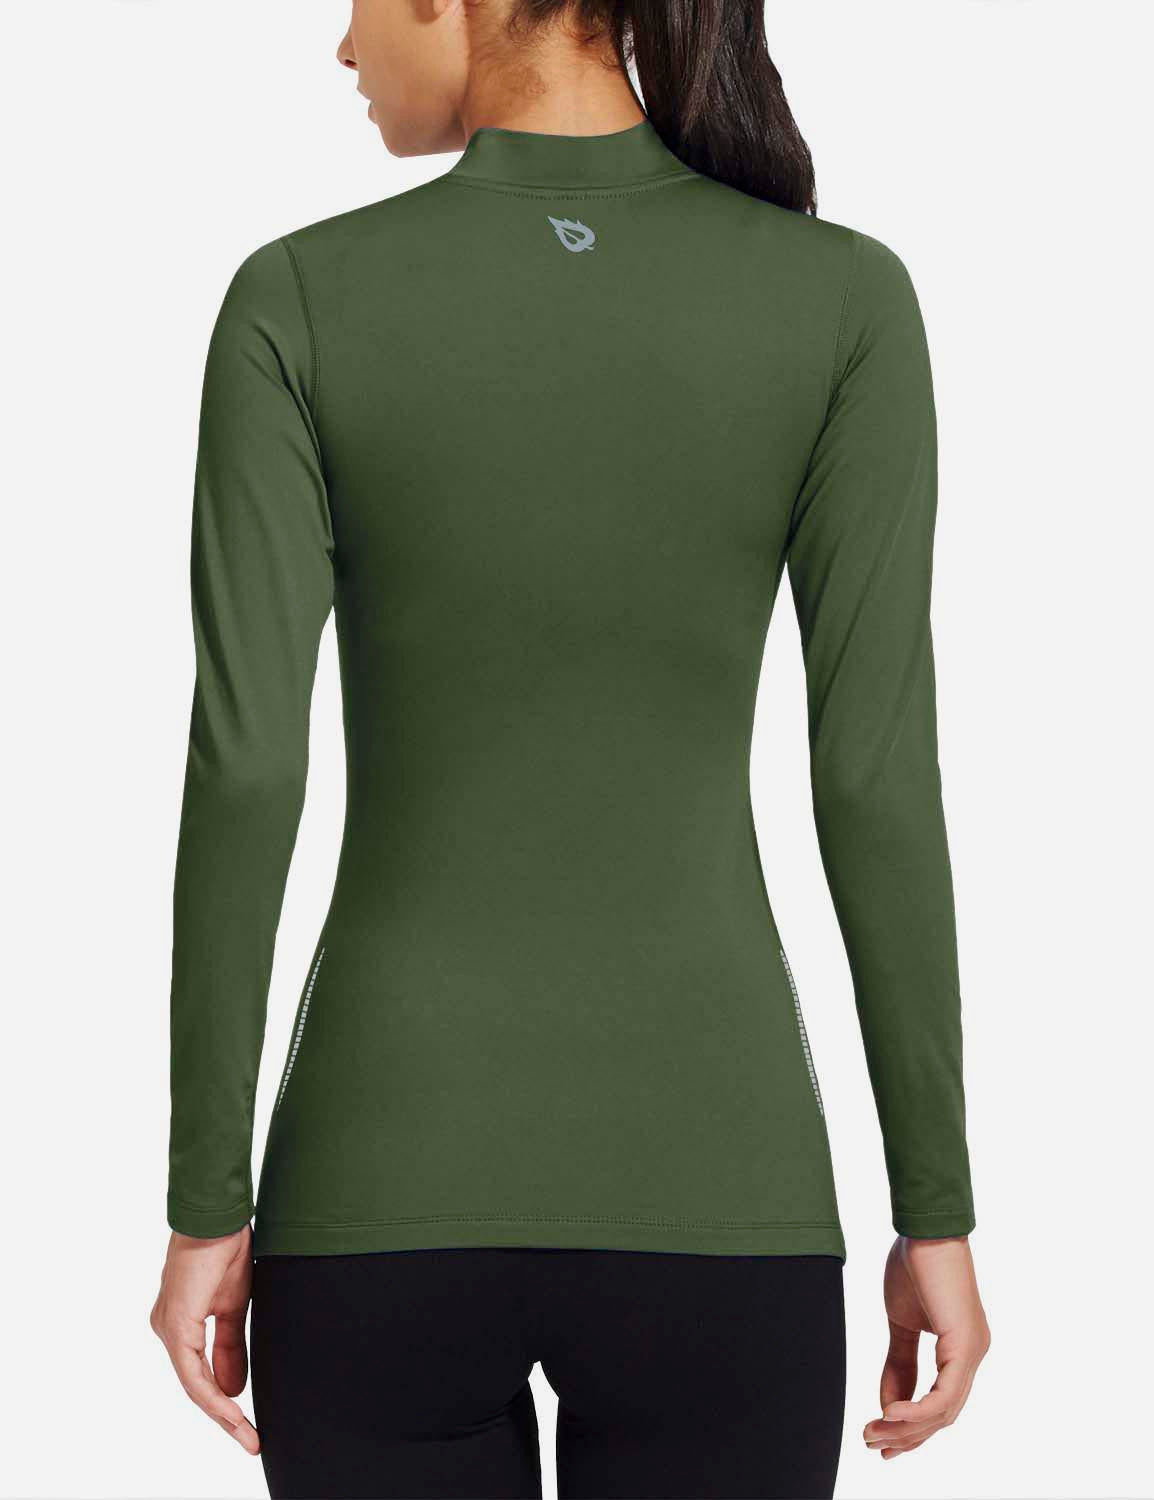 Baleaf Women's Basic Compression Mock-Neck Long Sleeved Shirt abd166 Green Back